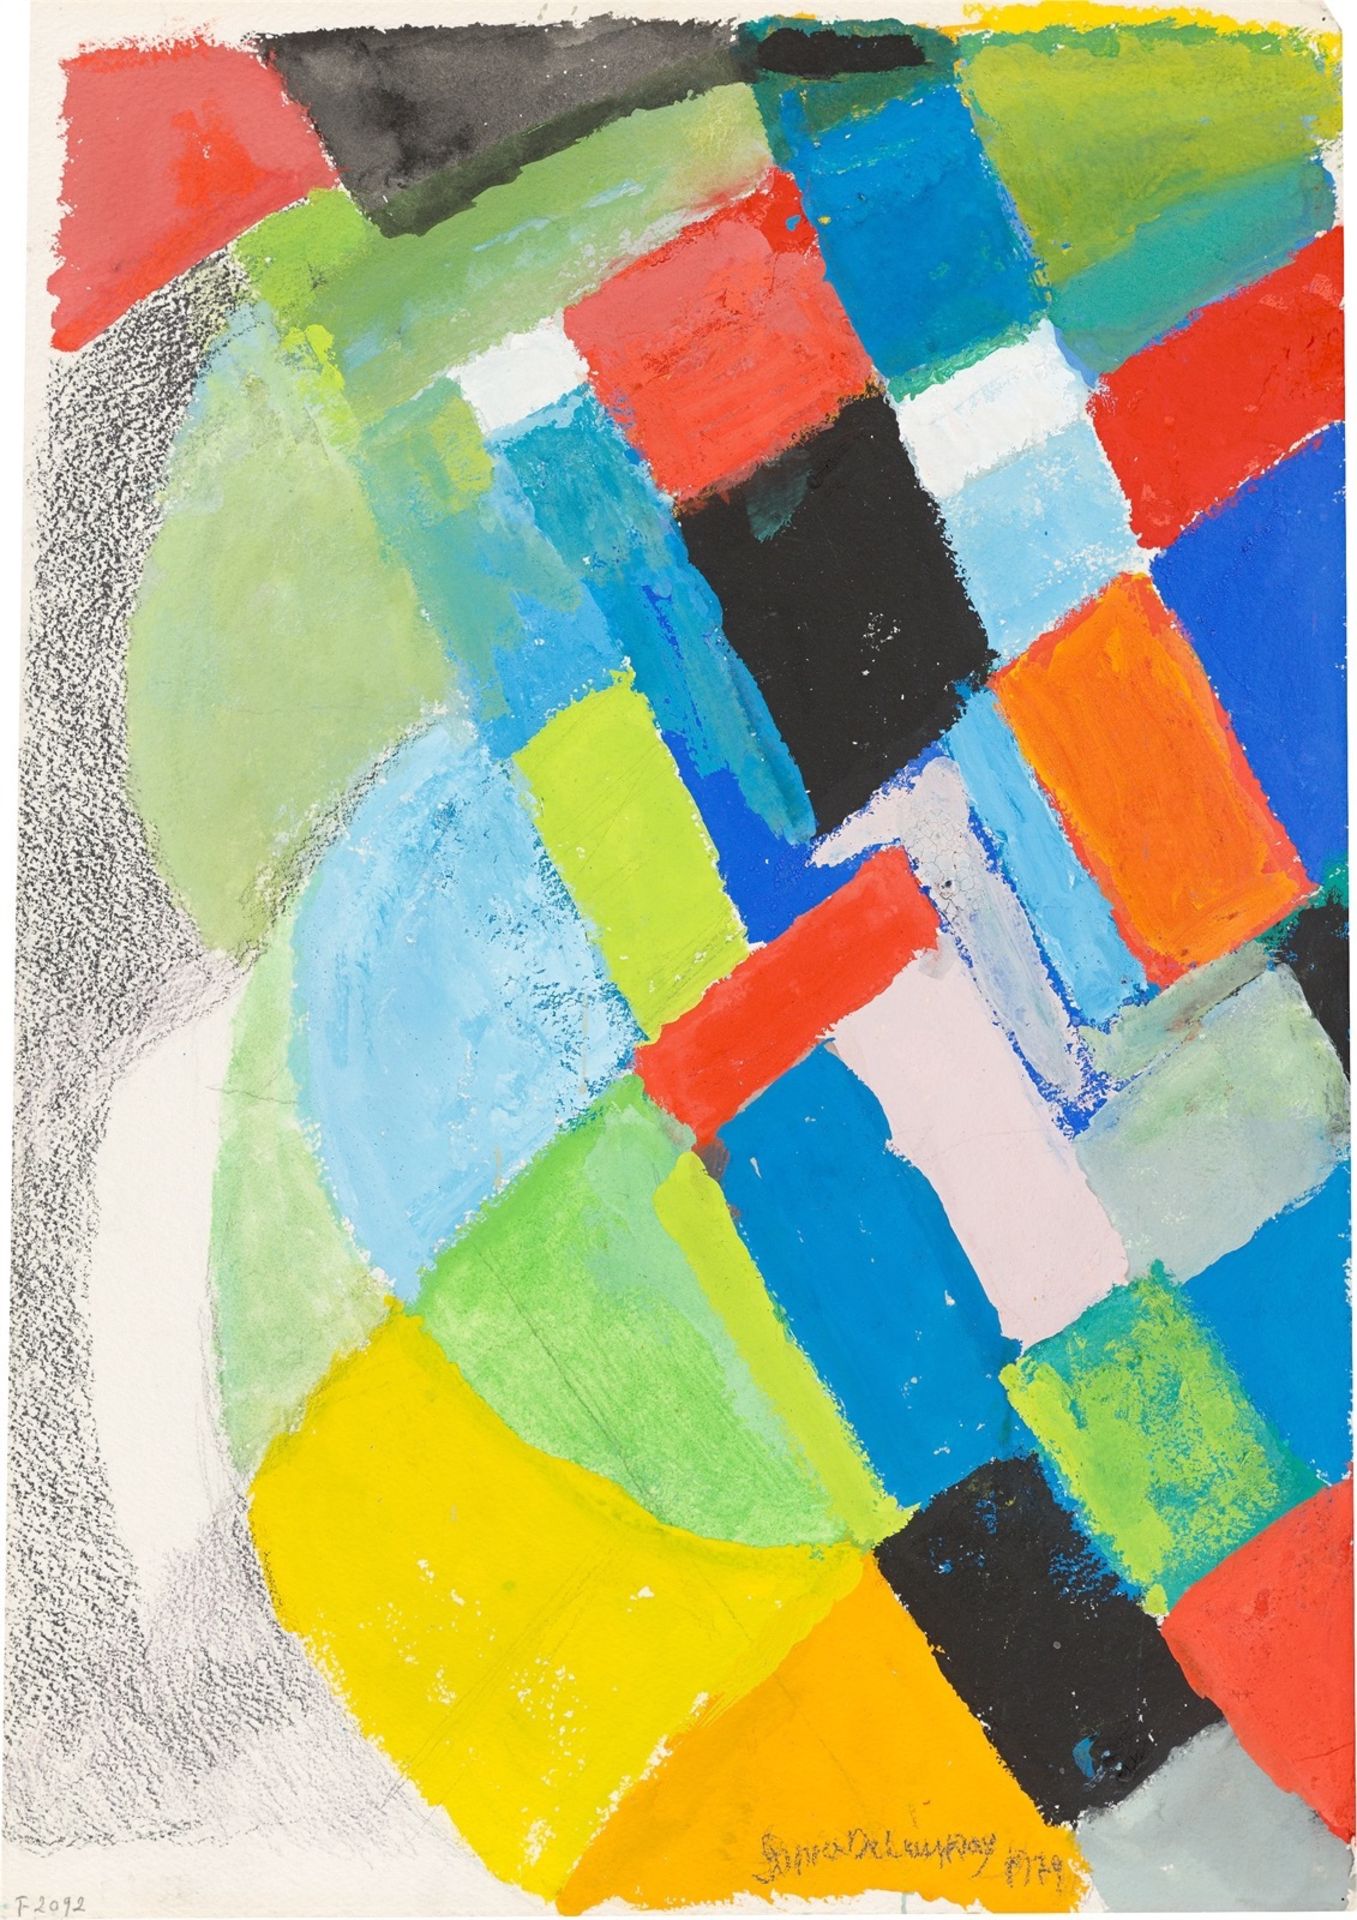 Sonia Delaunay. „Rhythme couleur“. 1979